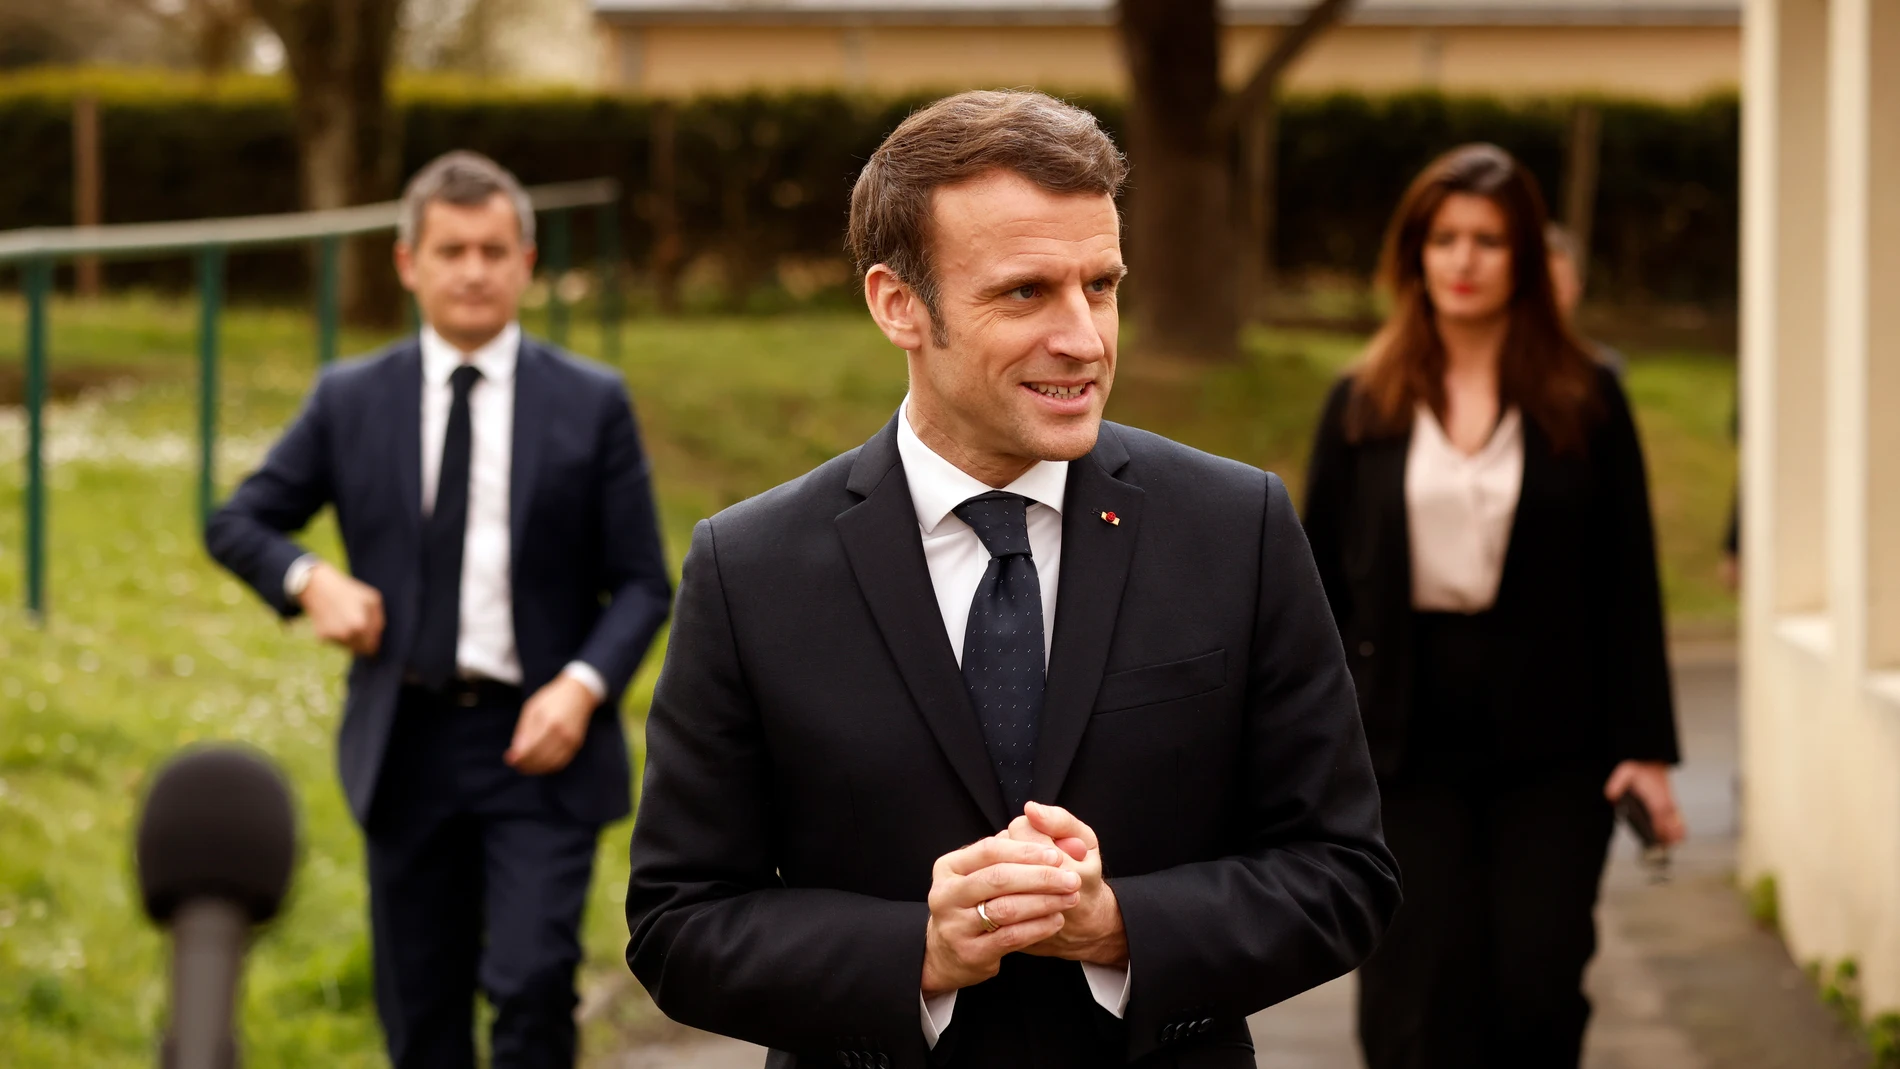 El presidente francés, Emmanuel Macron, asiste a una conferencia de prensa durante una visita a un centro para refugiados de Ucrania, en La Pommeraye, cerca de Mauges-sur-Loire, Francia, el 15 de marzo de 2022. EFE/EPA/YOAN VALAT / POOL